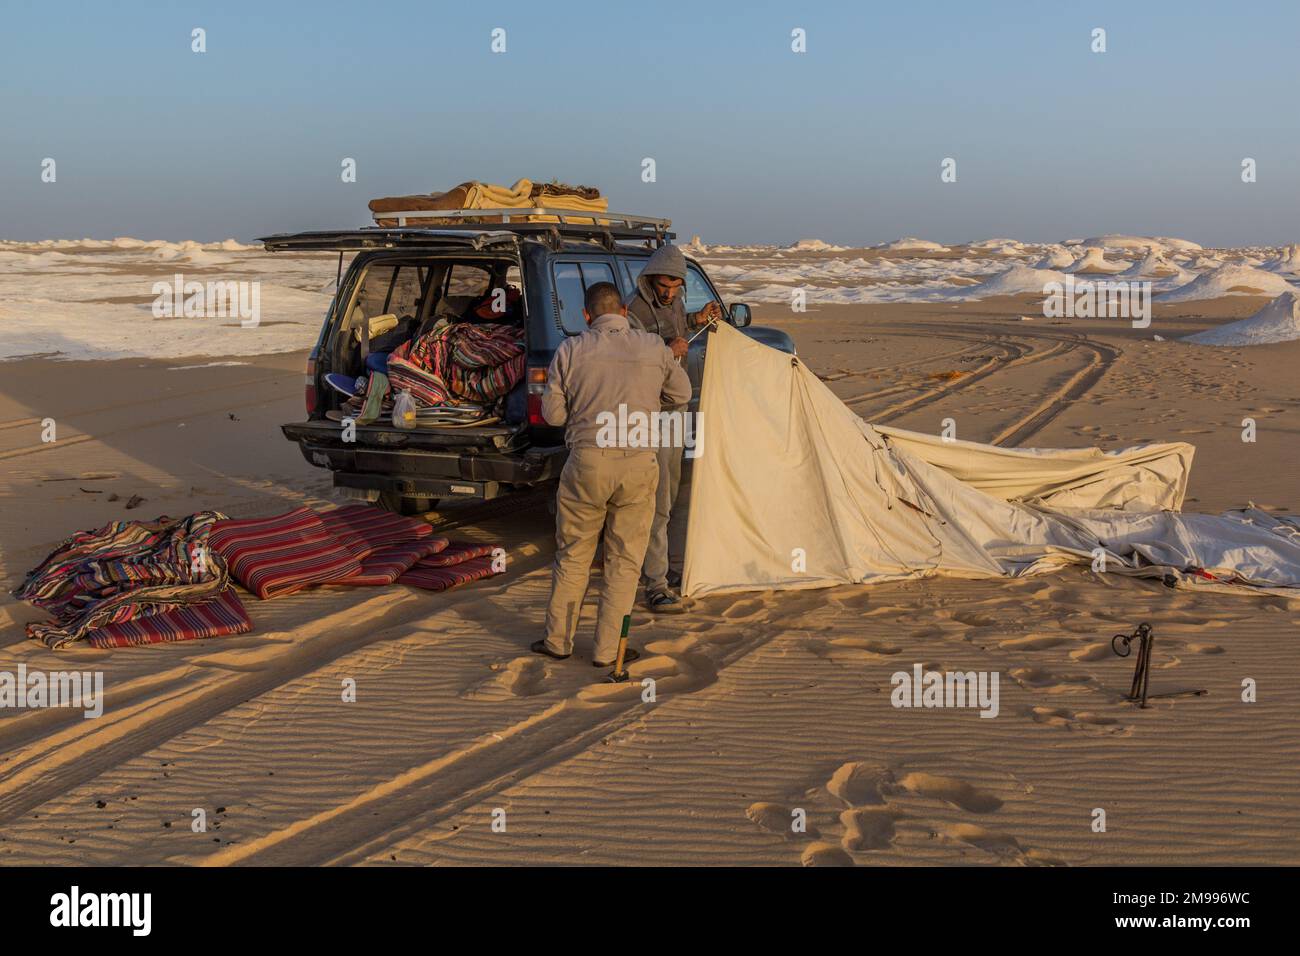 WHITE DESERT, EGYPT - FEBRUARY 6, 2019: Tour guides setting up a tent in the White Desert, Egypt Stock Photo